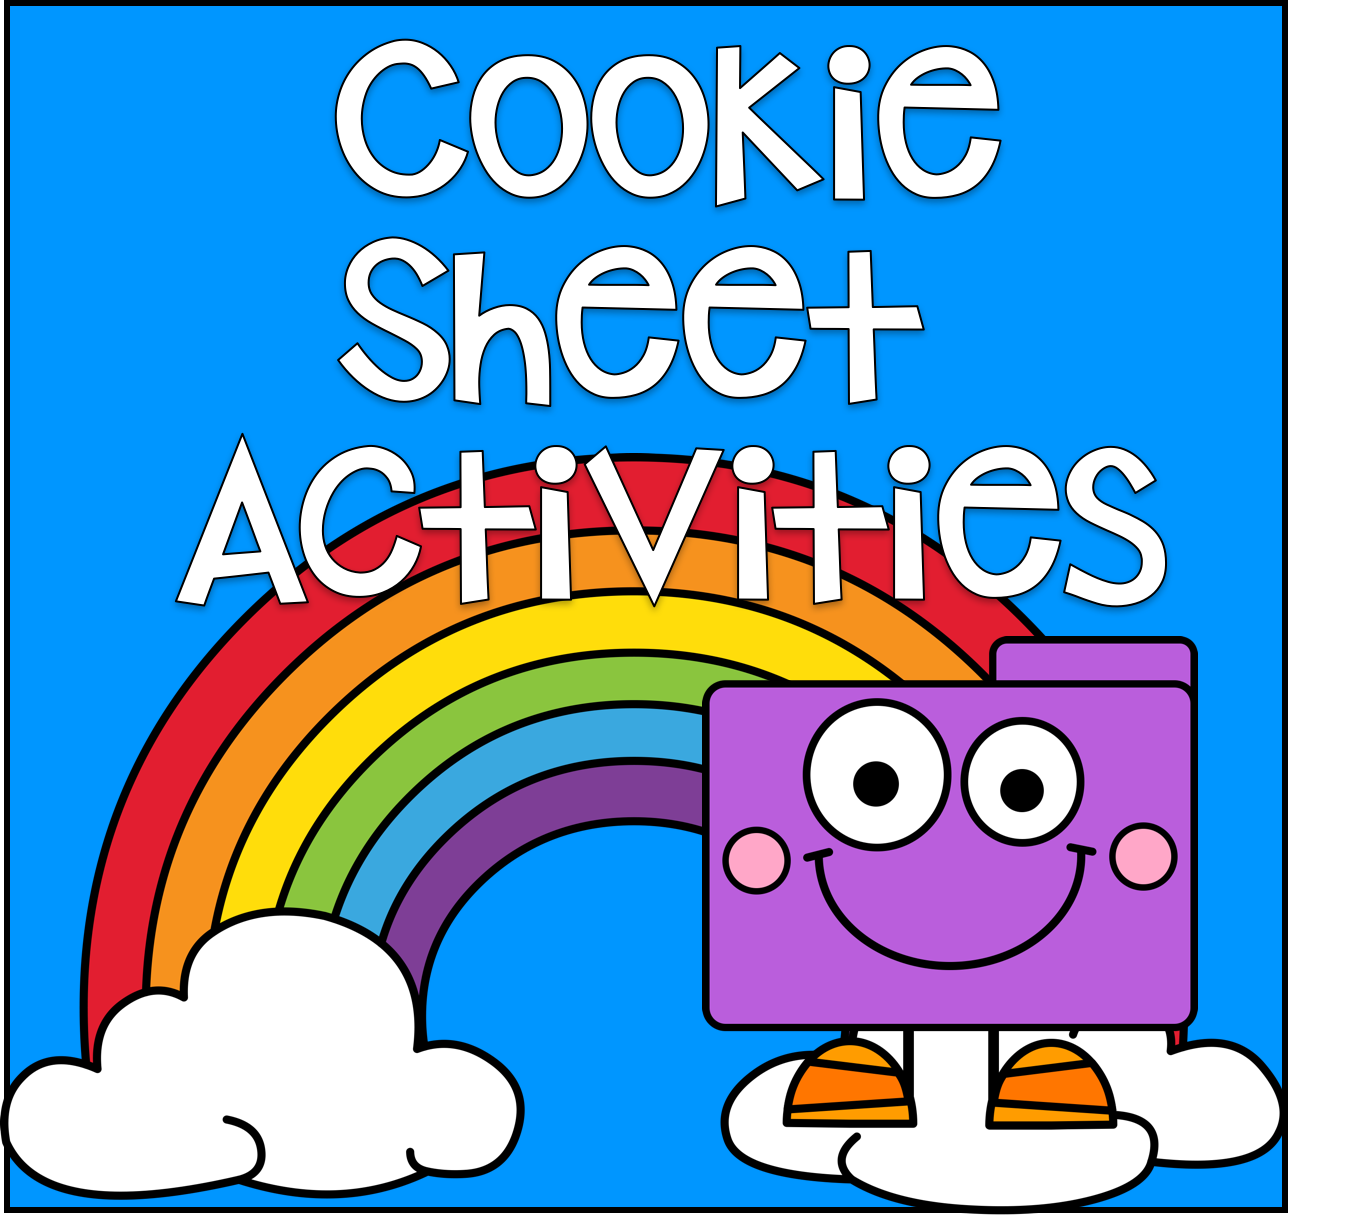 Cookie Sheet Activities